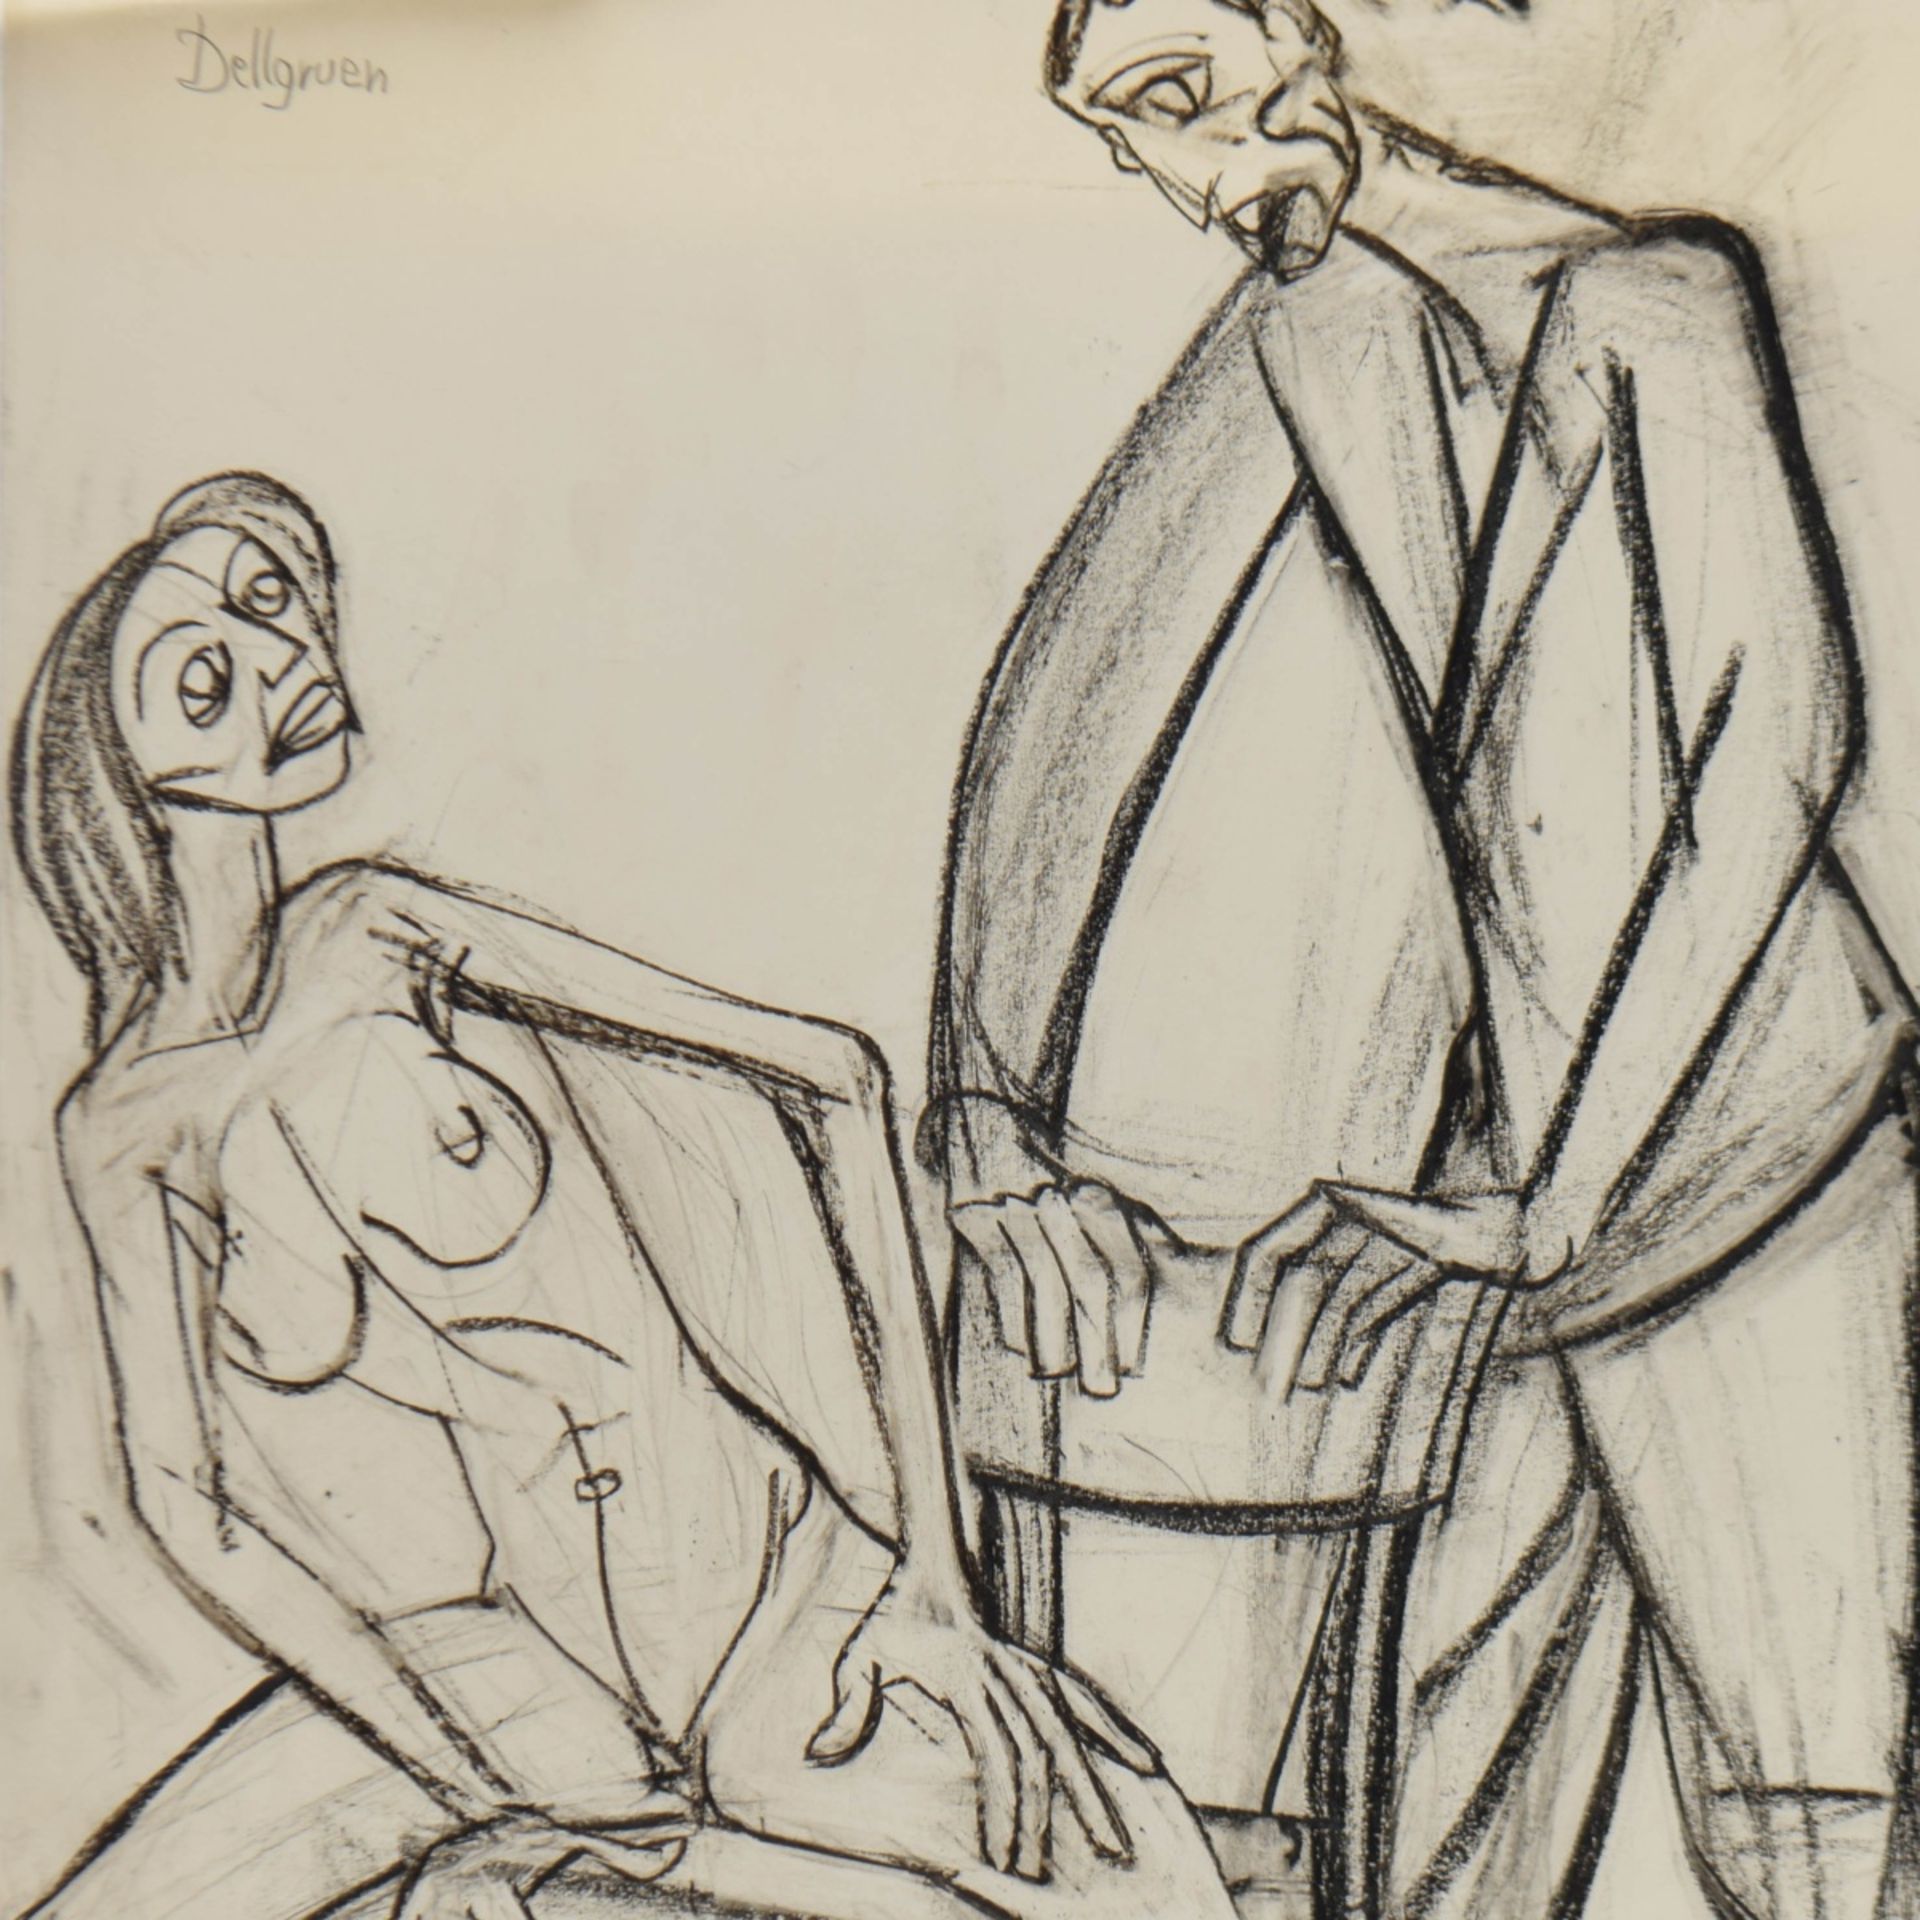 Dellgruen, Franziskus (1901 Köln - 1984 Berlin) Kohlezeichnung, Paar, erotische Darstellung der Frau